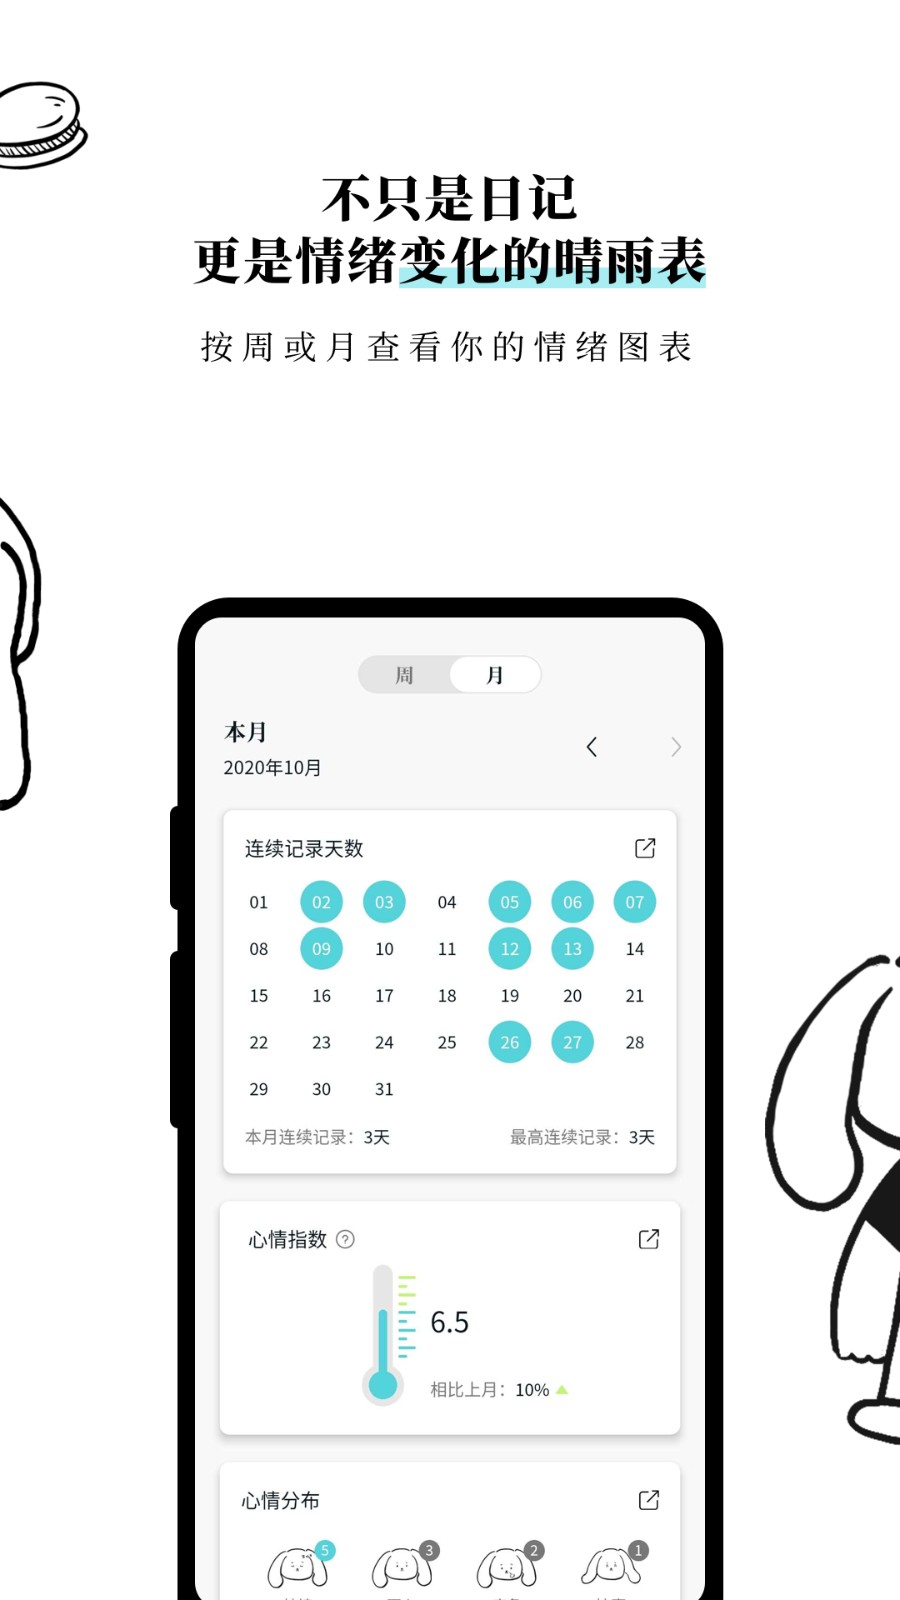 Moo日记解锁专业版手机APP下载